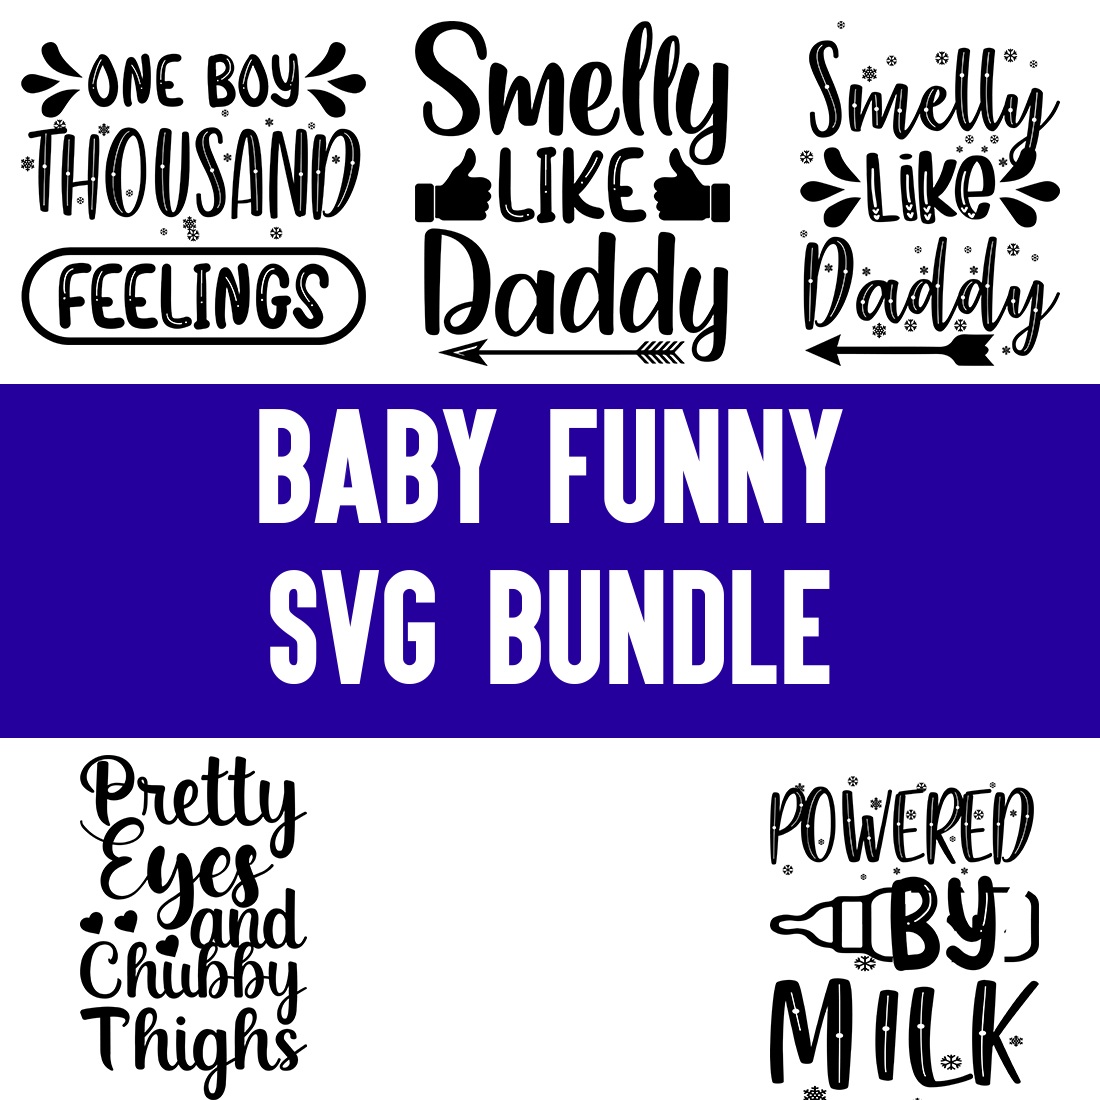 Stinky Love You SVG Cut File